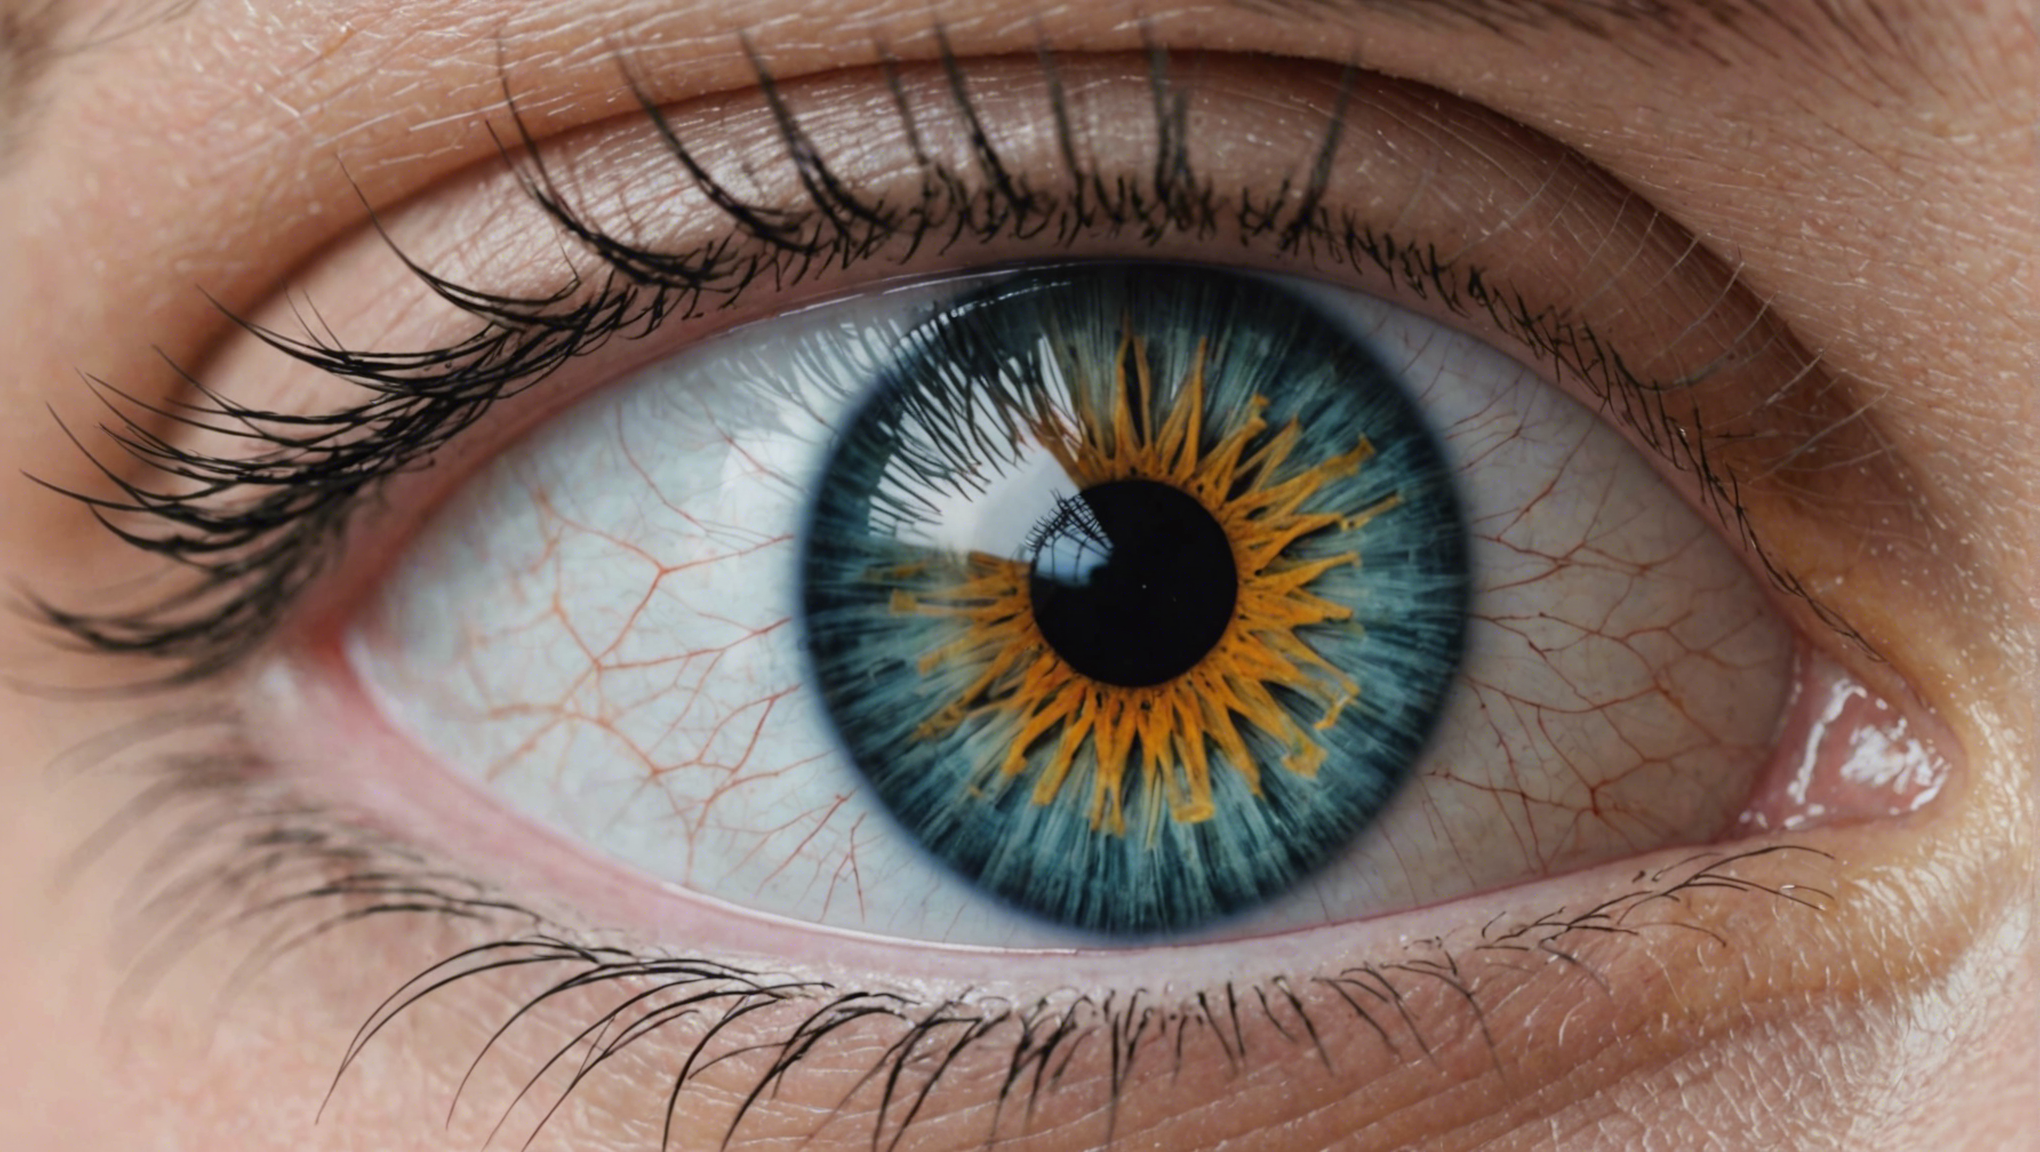 découvrez comment l'opération des yeux à lille peut vous offrir une nouvelle vision de la vie grâce à notre expertise et nos technologies de pointe.